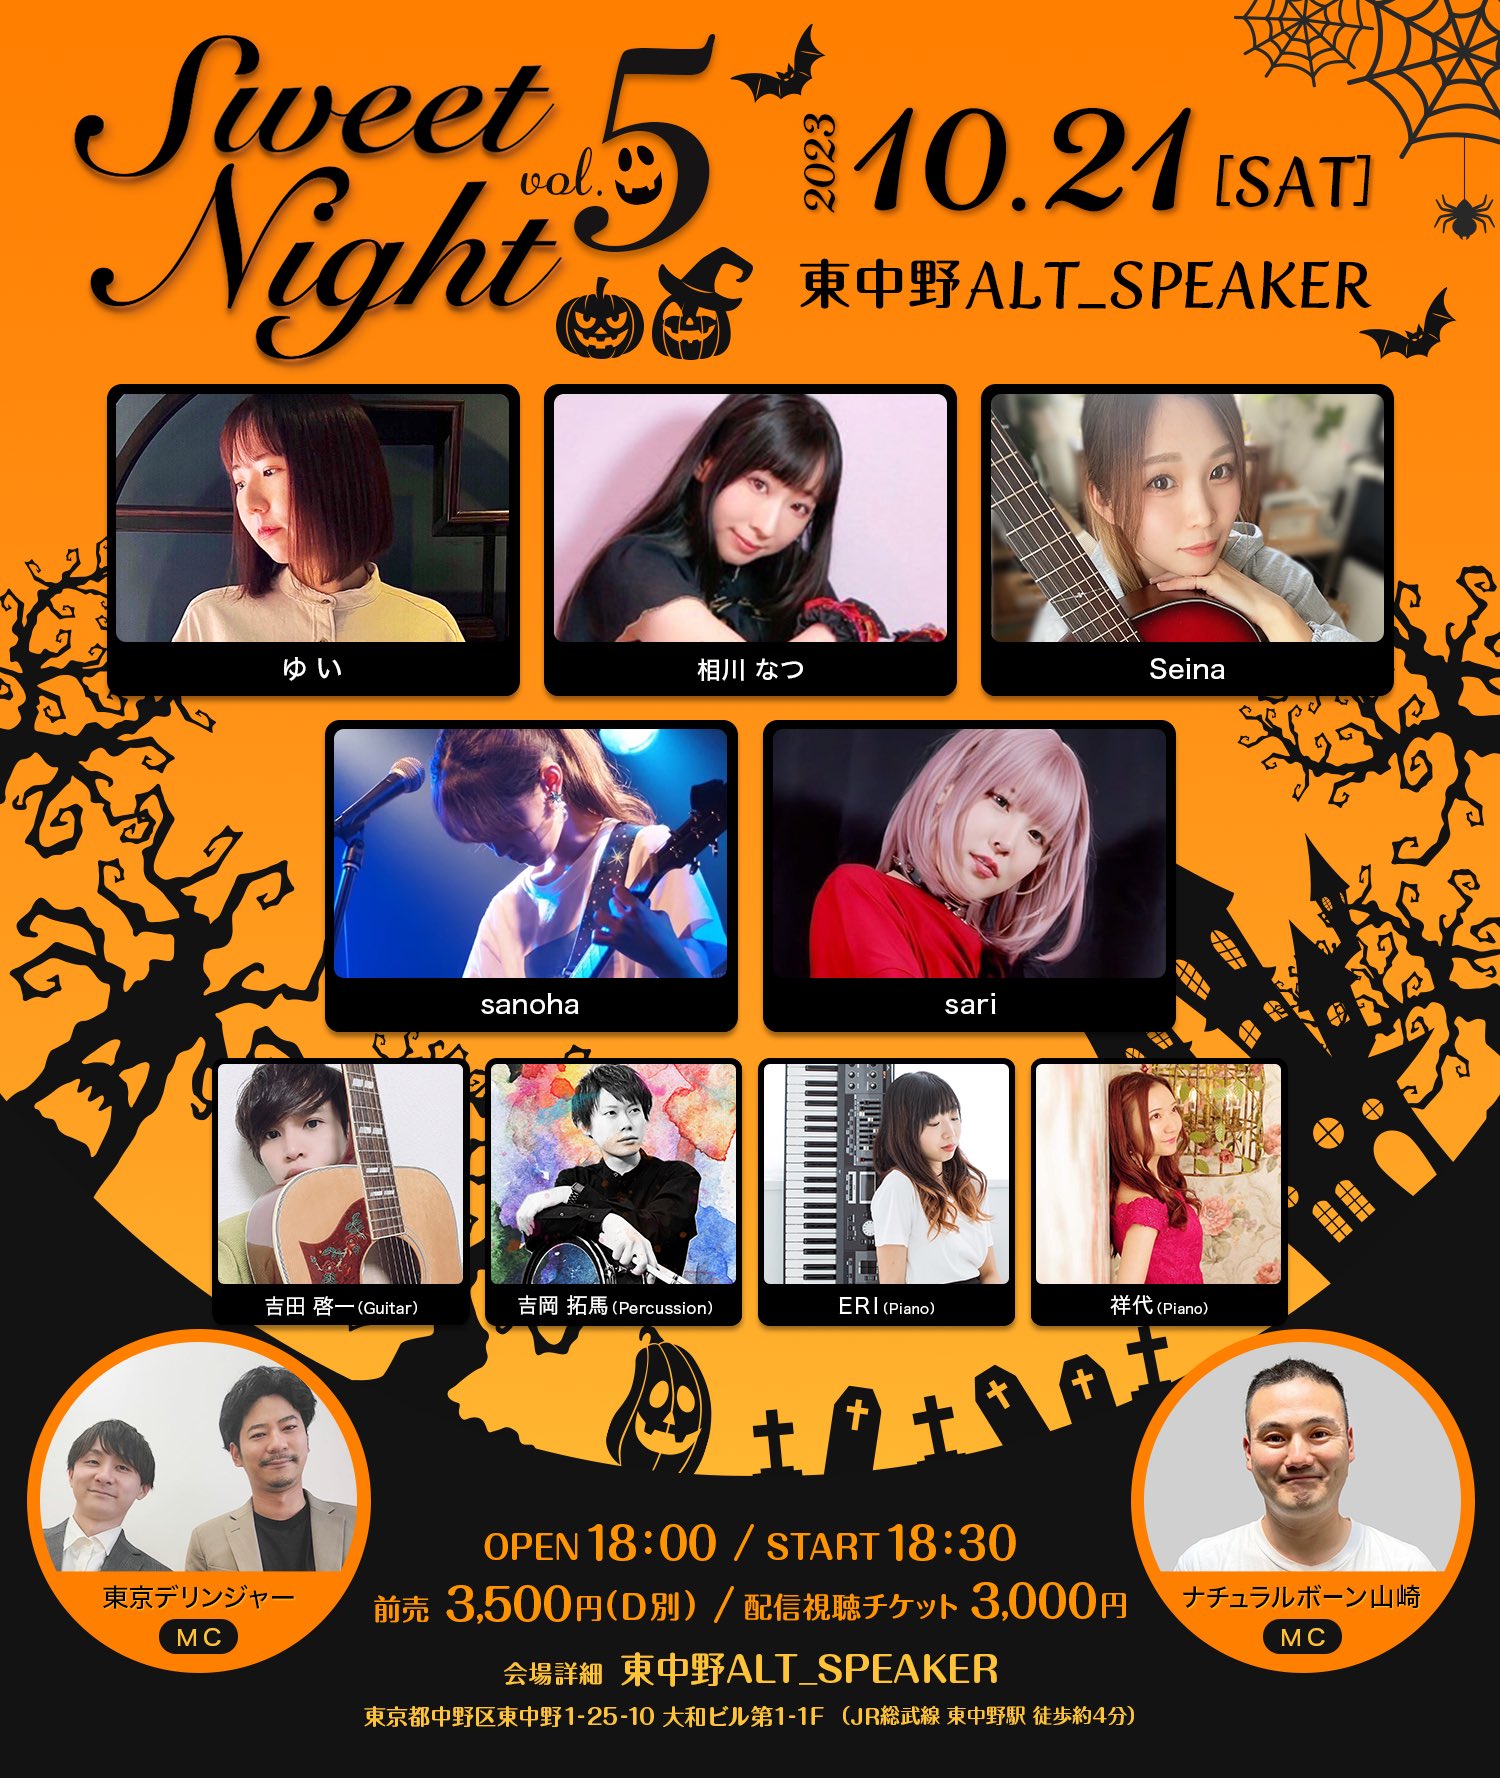 10月21日(土)「〜 Sweet Night Special Live vol.5〜」に出演します!!!